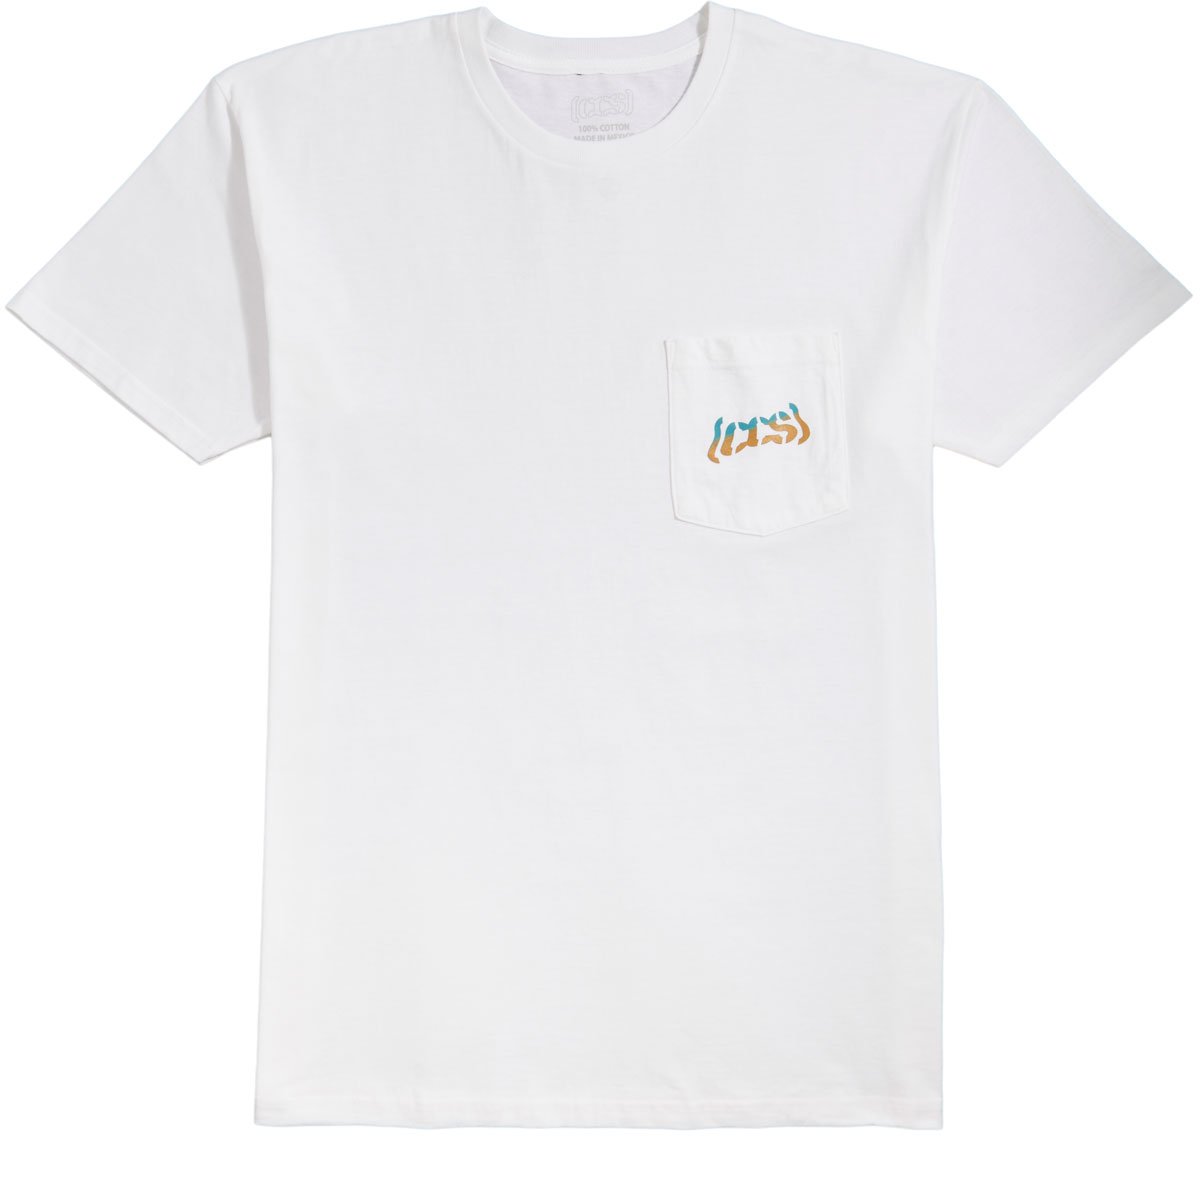 CCS Warped Logo Pocket T-Shirt - White/Teal/Orange image 1